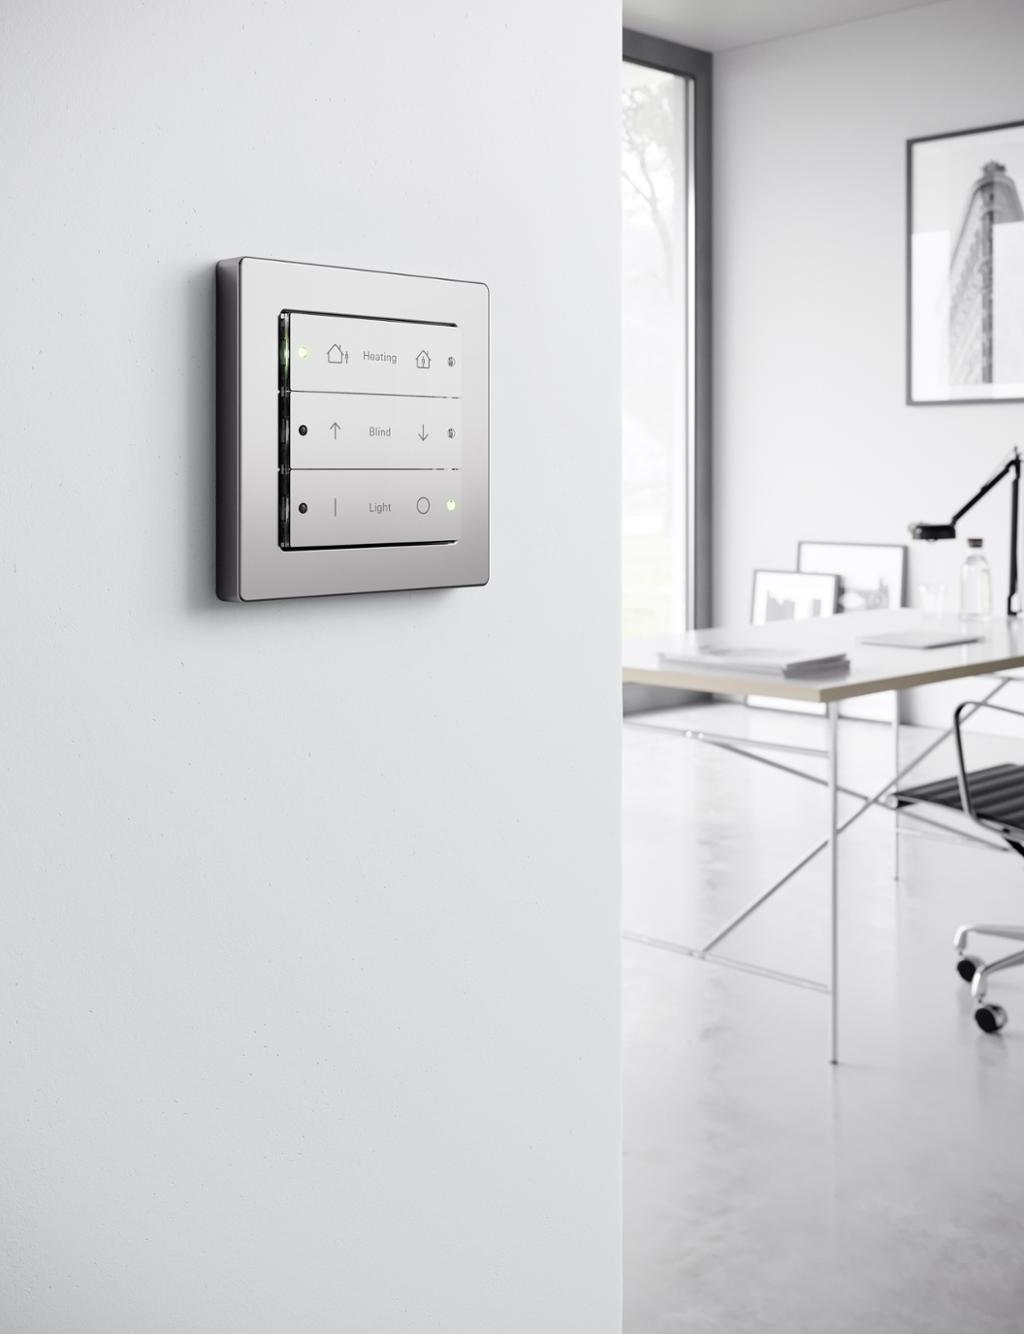 Vi ser en hvit vegg med brytere med symboler og LED-indikatorer. Bryterne kan styre oppvarming, persienner og belysning. I bakgrunnen ser vi en pult og en kontorstol. Foto.